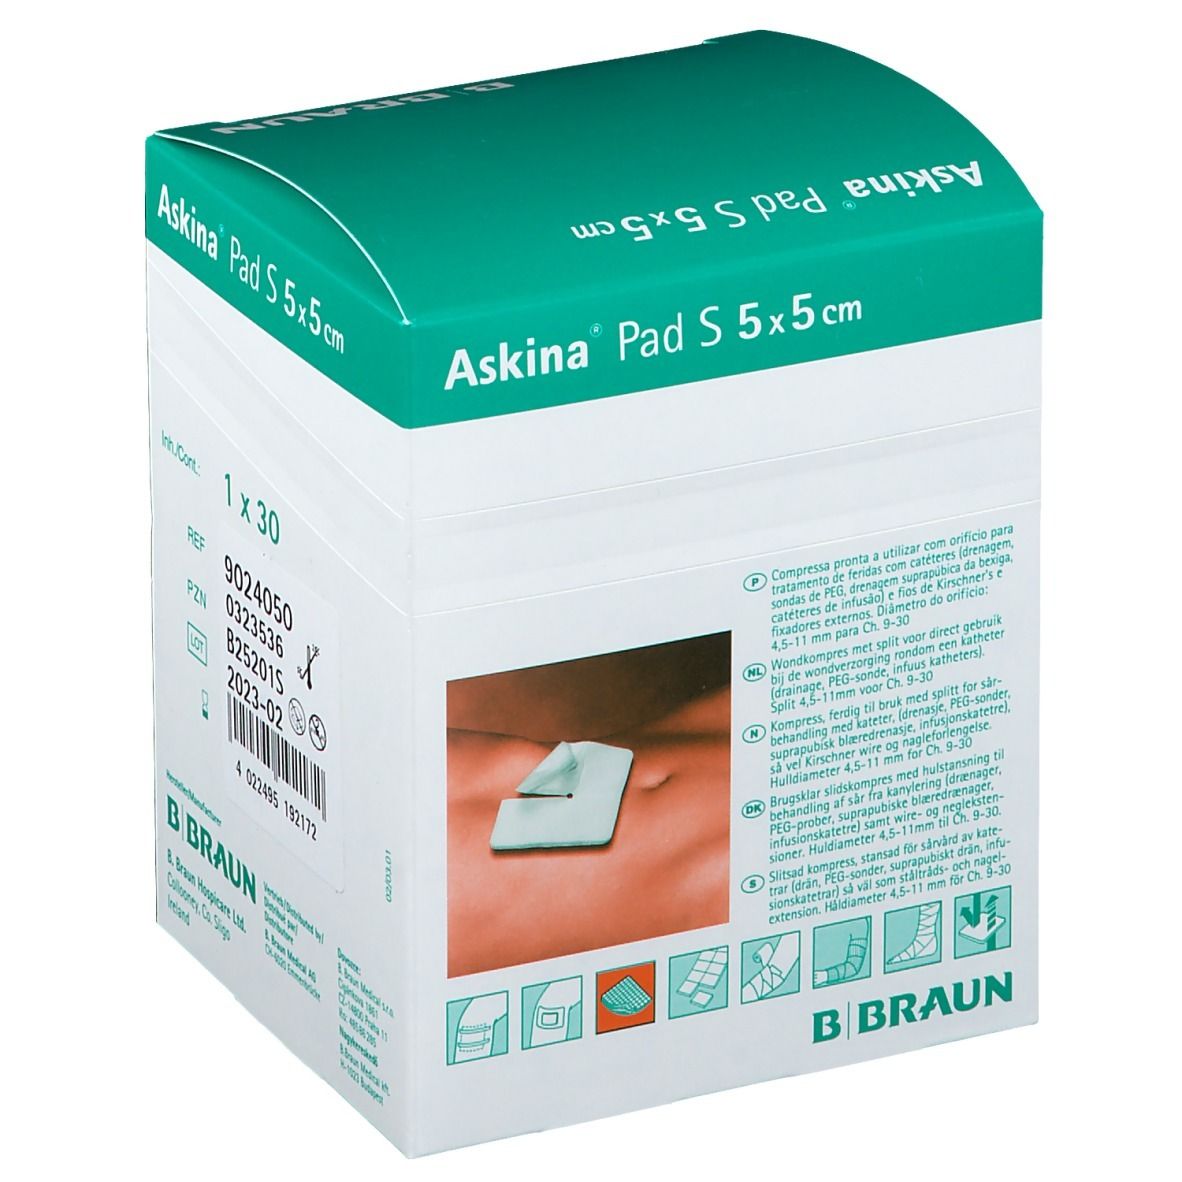 Askina® Pad S 5x5cm